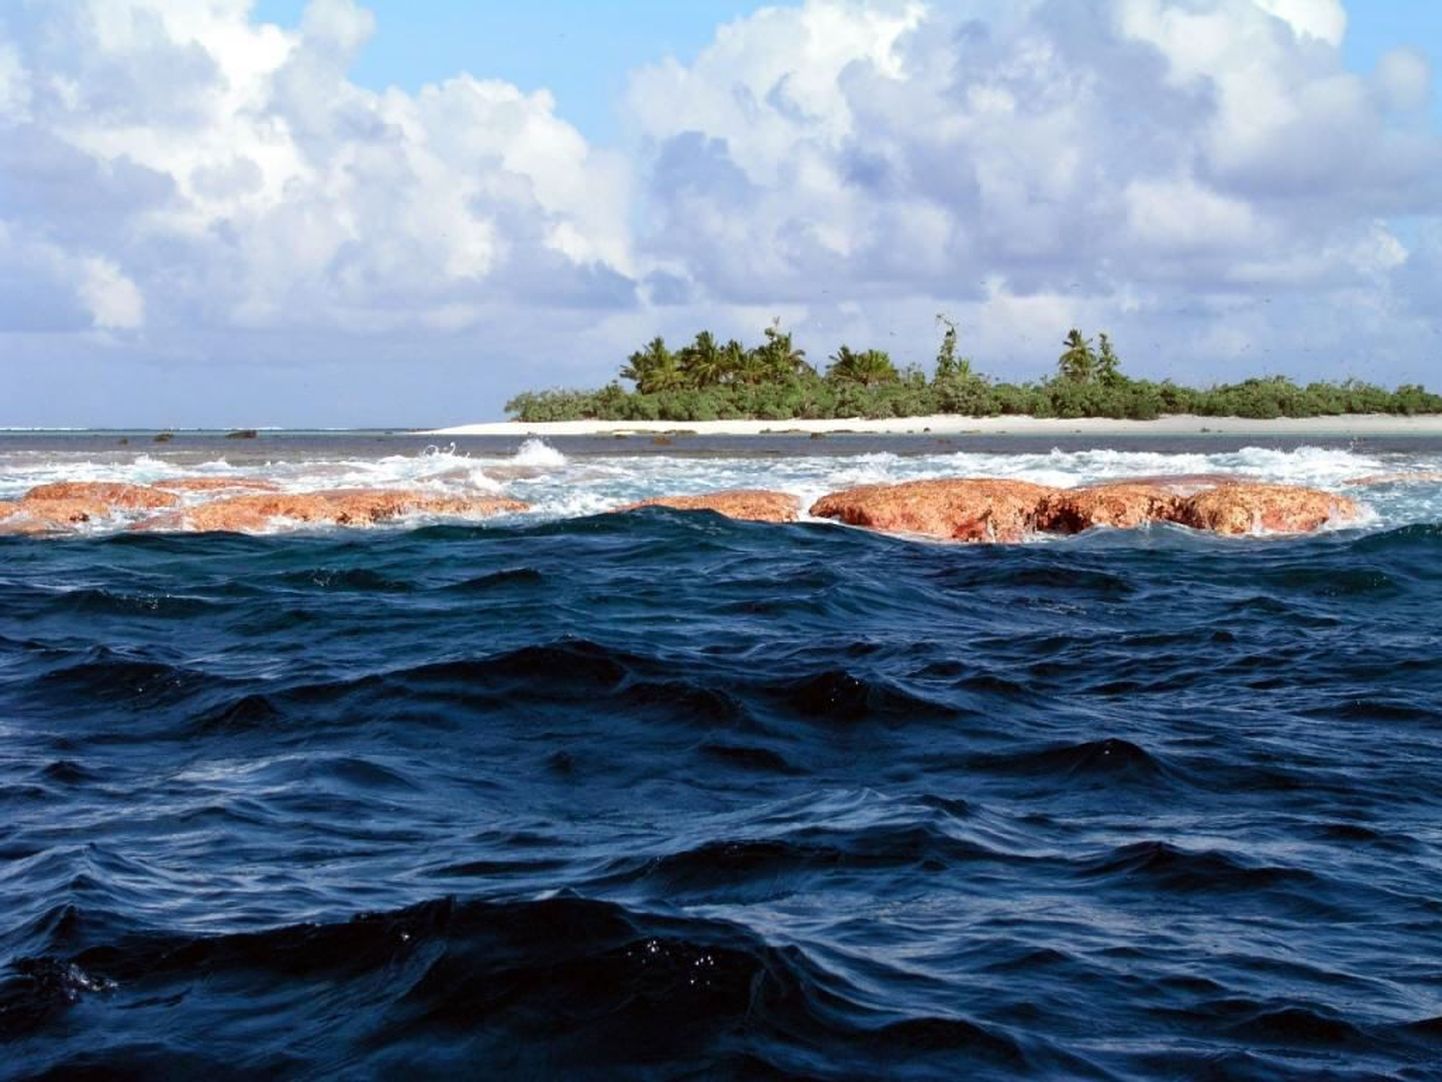 Программа Census of Marine Life изучает морские организмы в малоизученных регионах.